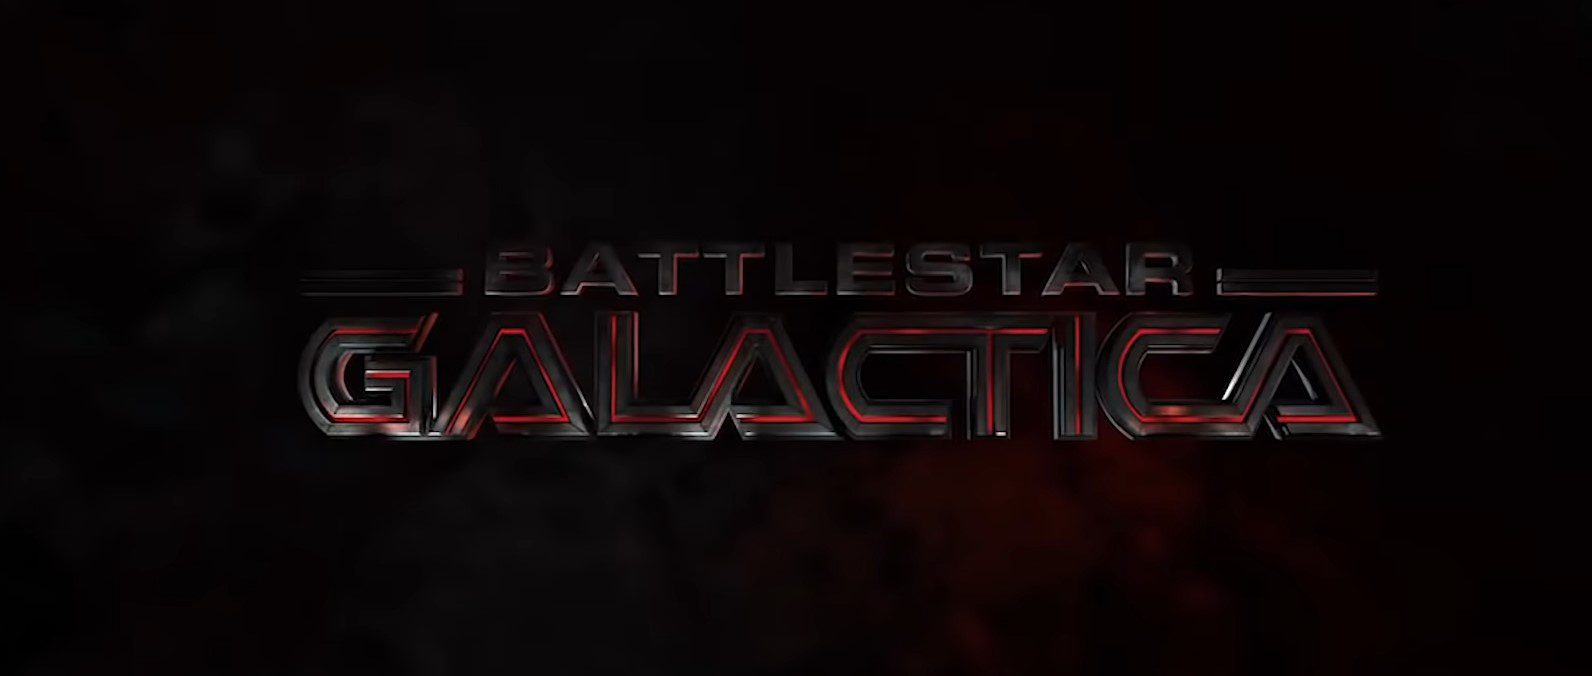 Battlestar Galactica Watch Order